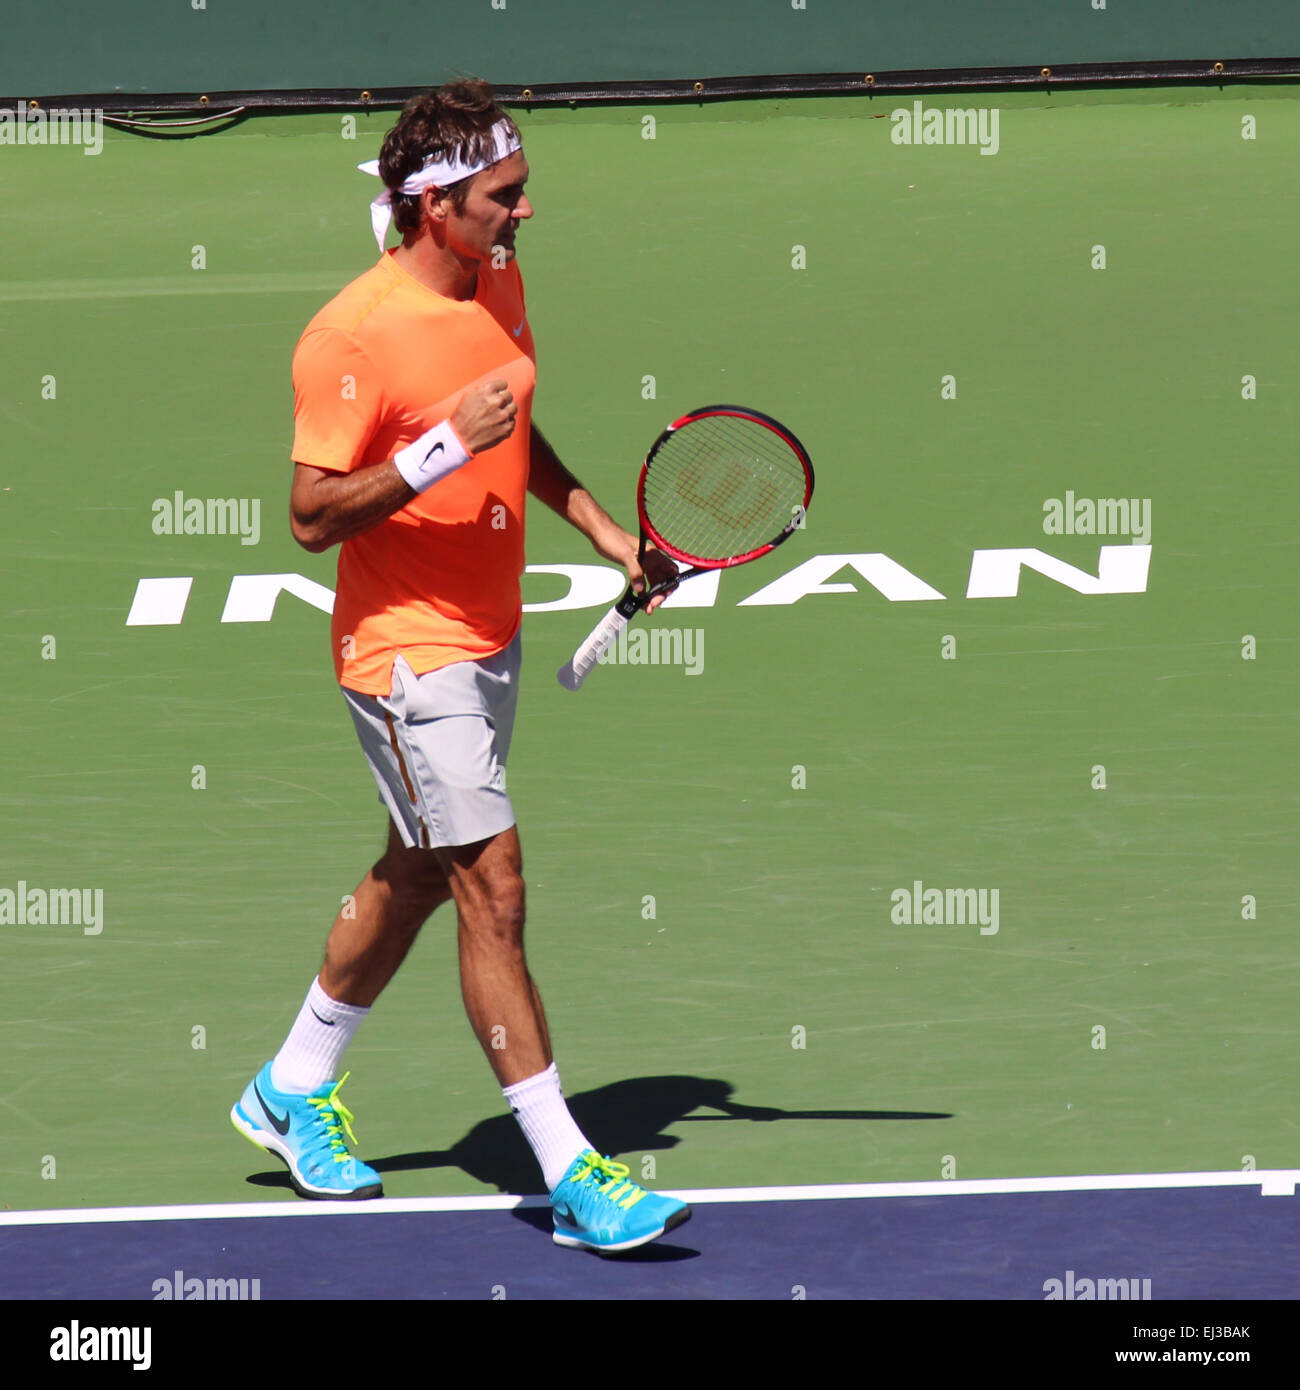 Indian Wells, le 20 mars 2015, joueur de tennis Roger Federer bat Tomas Berdych en quart de la masculin au BNP Paribas Open (score 6-4 6-0). Crédit Photo : Roger Federer : Werner - Photos/Alamy Live News Banque D'Images